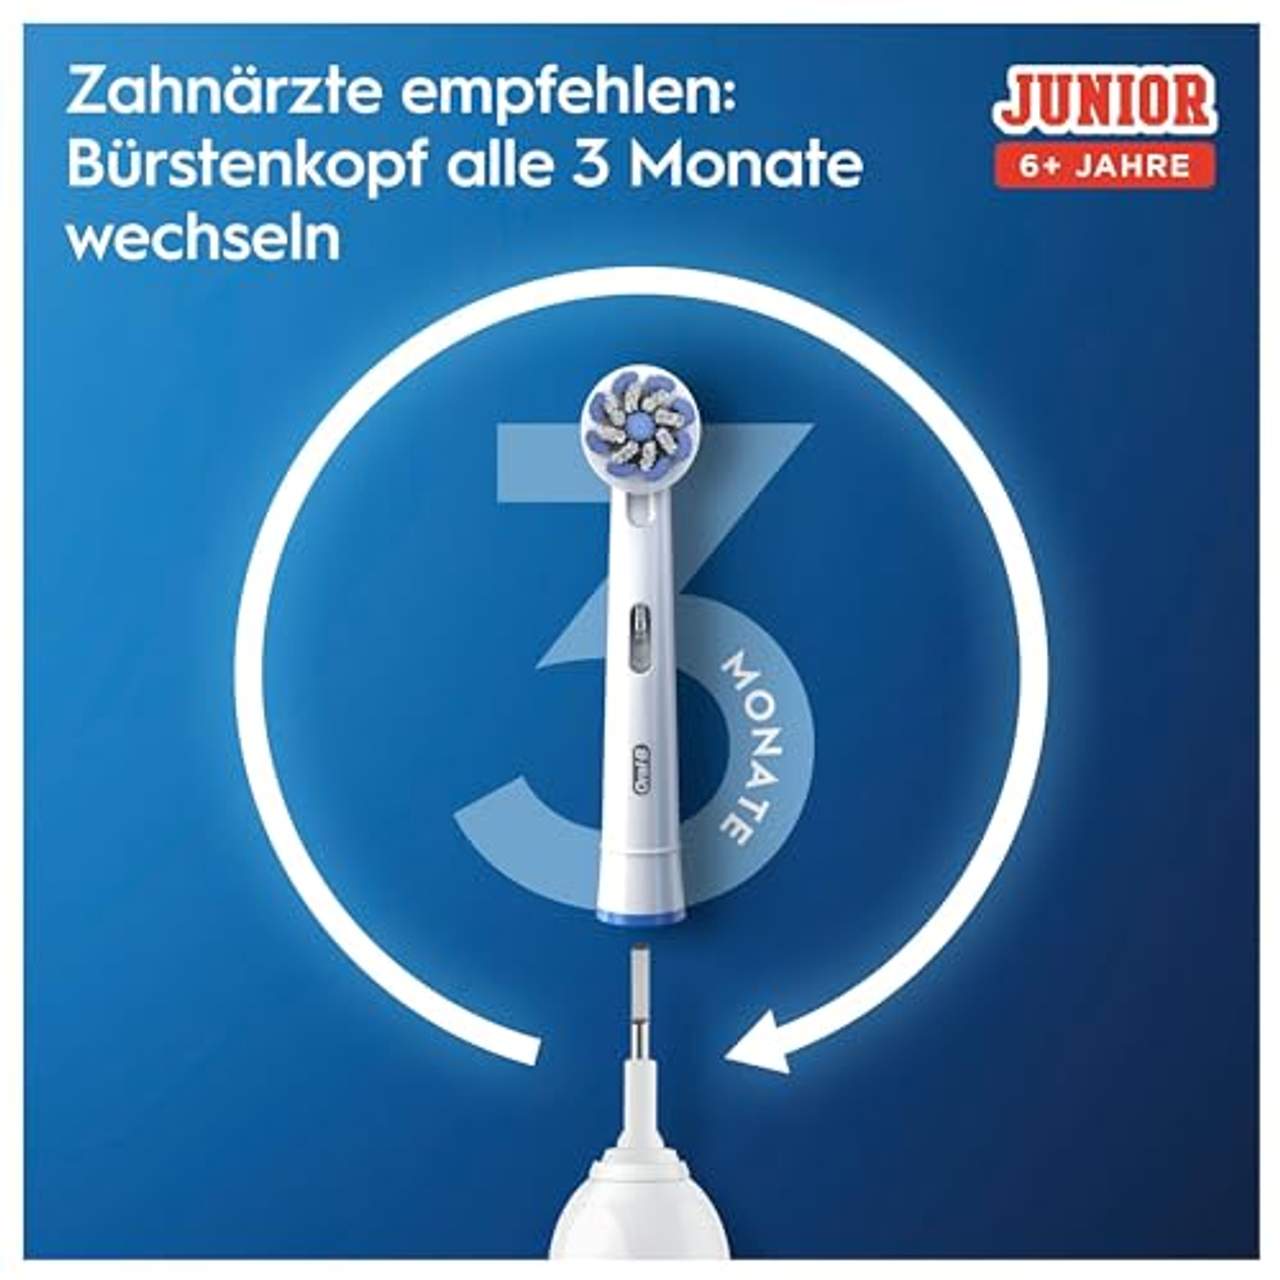 Oral-B Junior Minnie Mouse Elektrische Zahnbürste